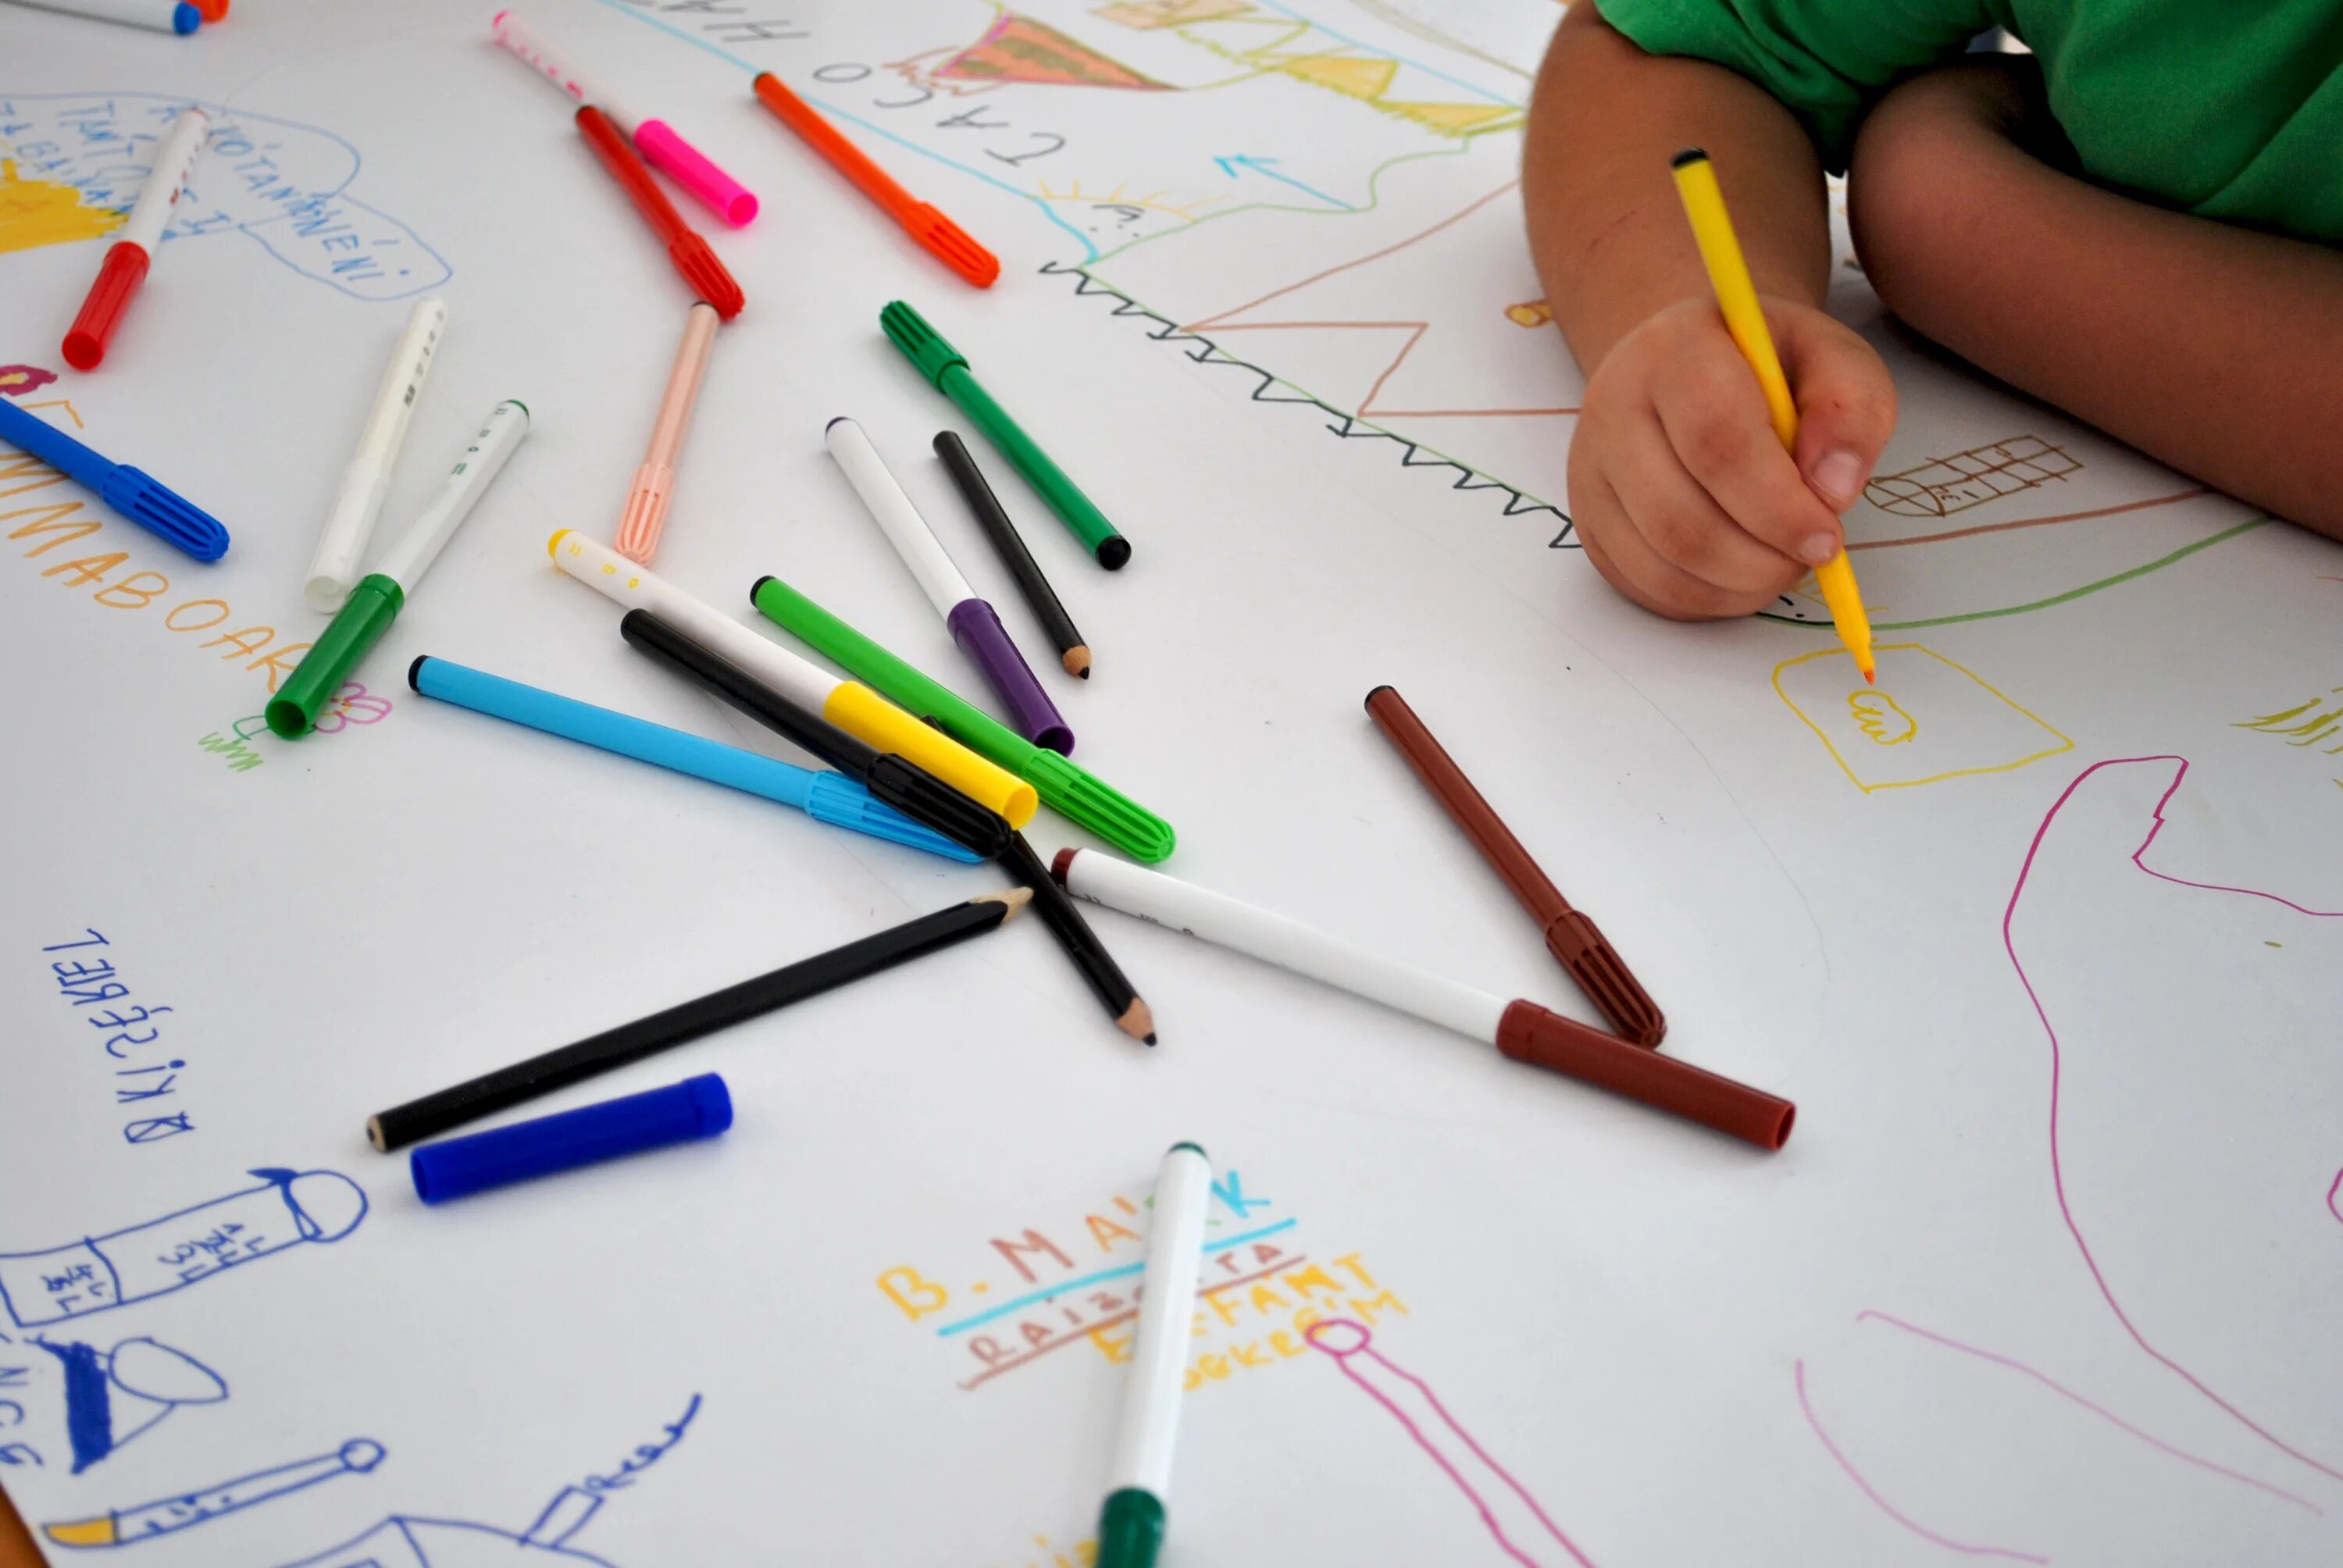 Руки карандашом. Детская рука с карандашом. Фотосессия с карандашами. Карандаш и карандаши в руках. Pencil work